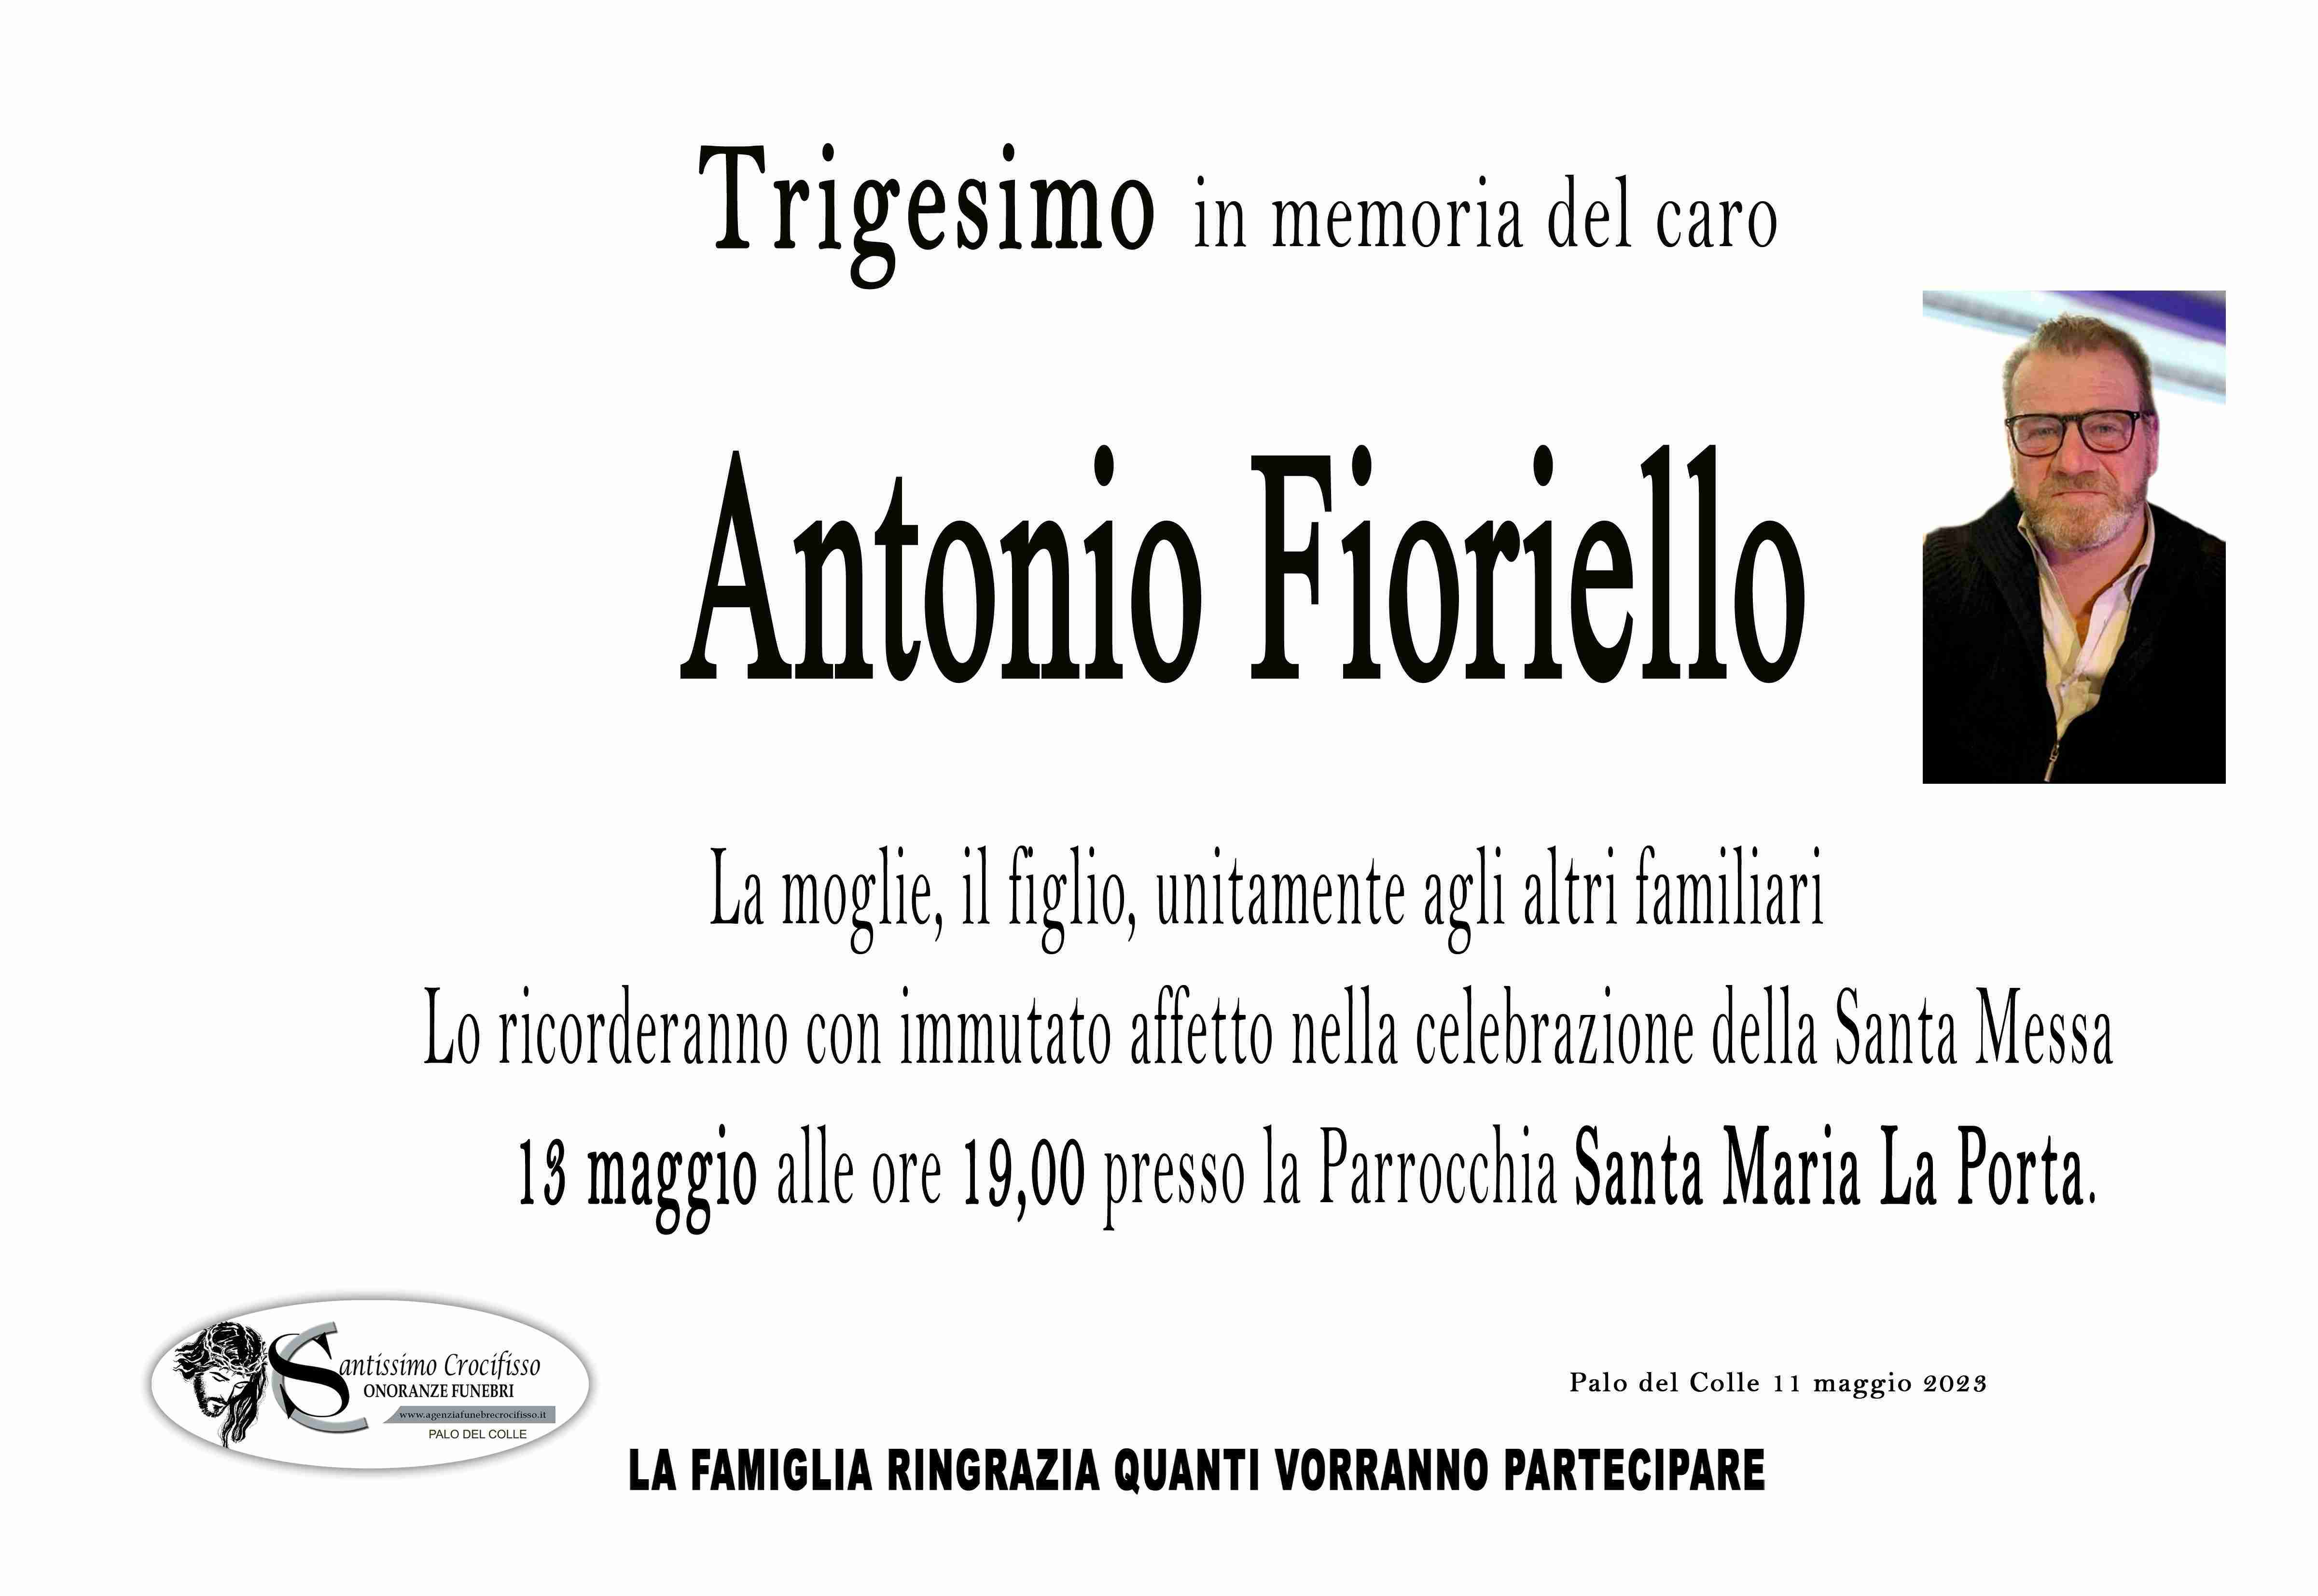 Antonio Fioriello